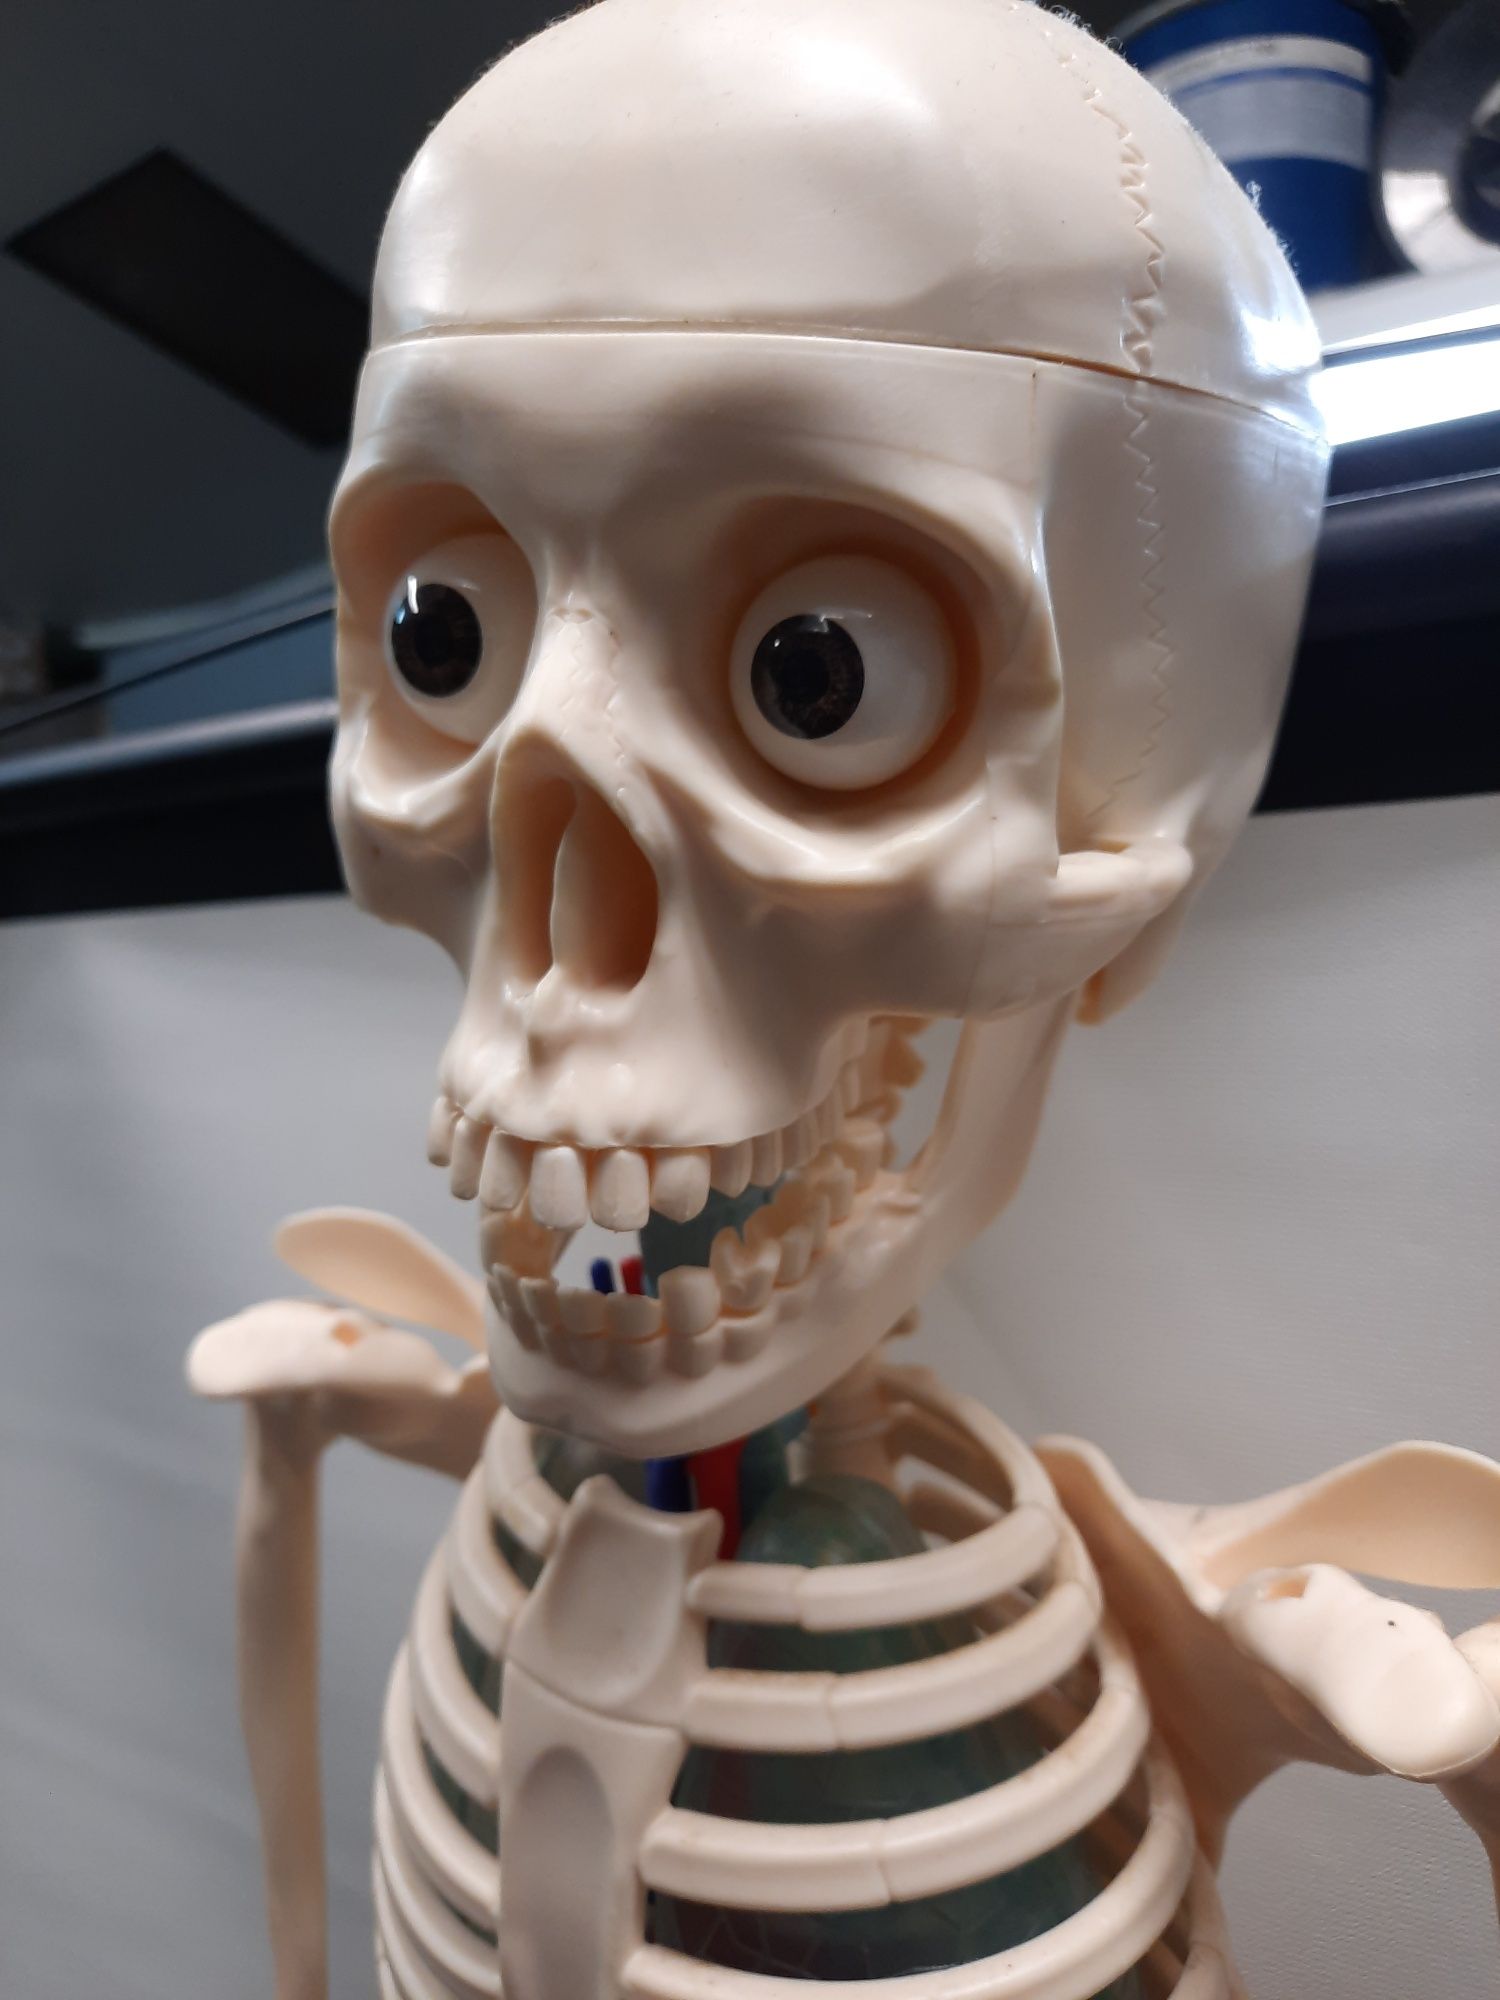 Colecção: Esqueleto corpo humano completo